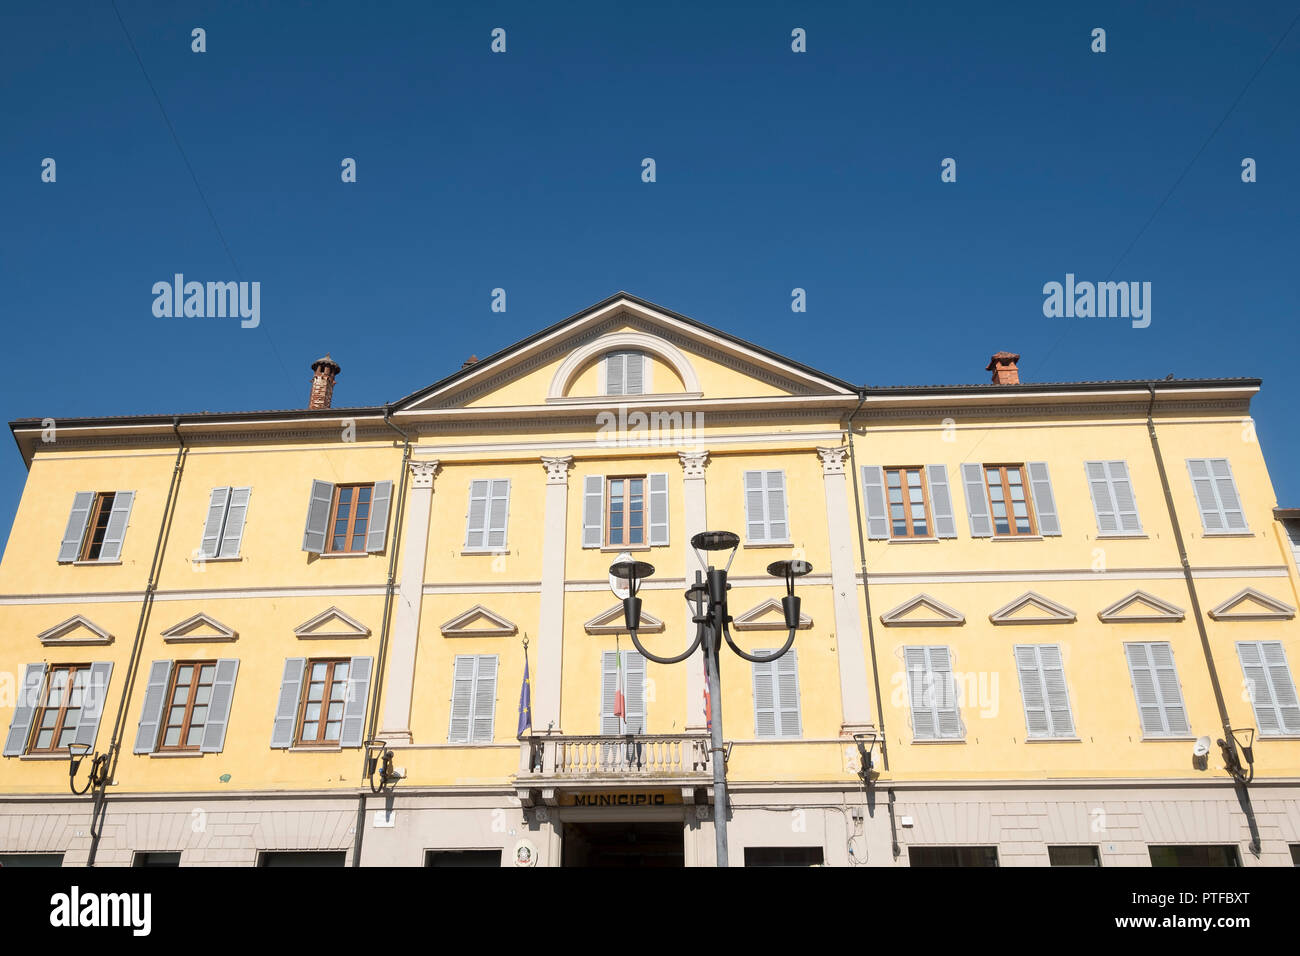 Carpignano Sesia, Novara, Piedmont, Italy: facade of historic palace Stock Photo